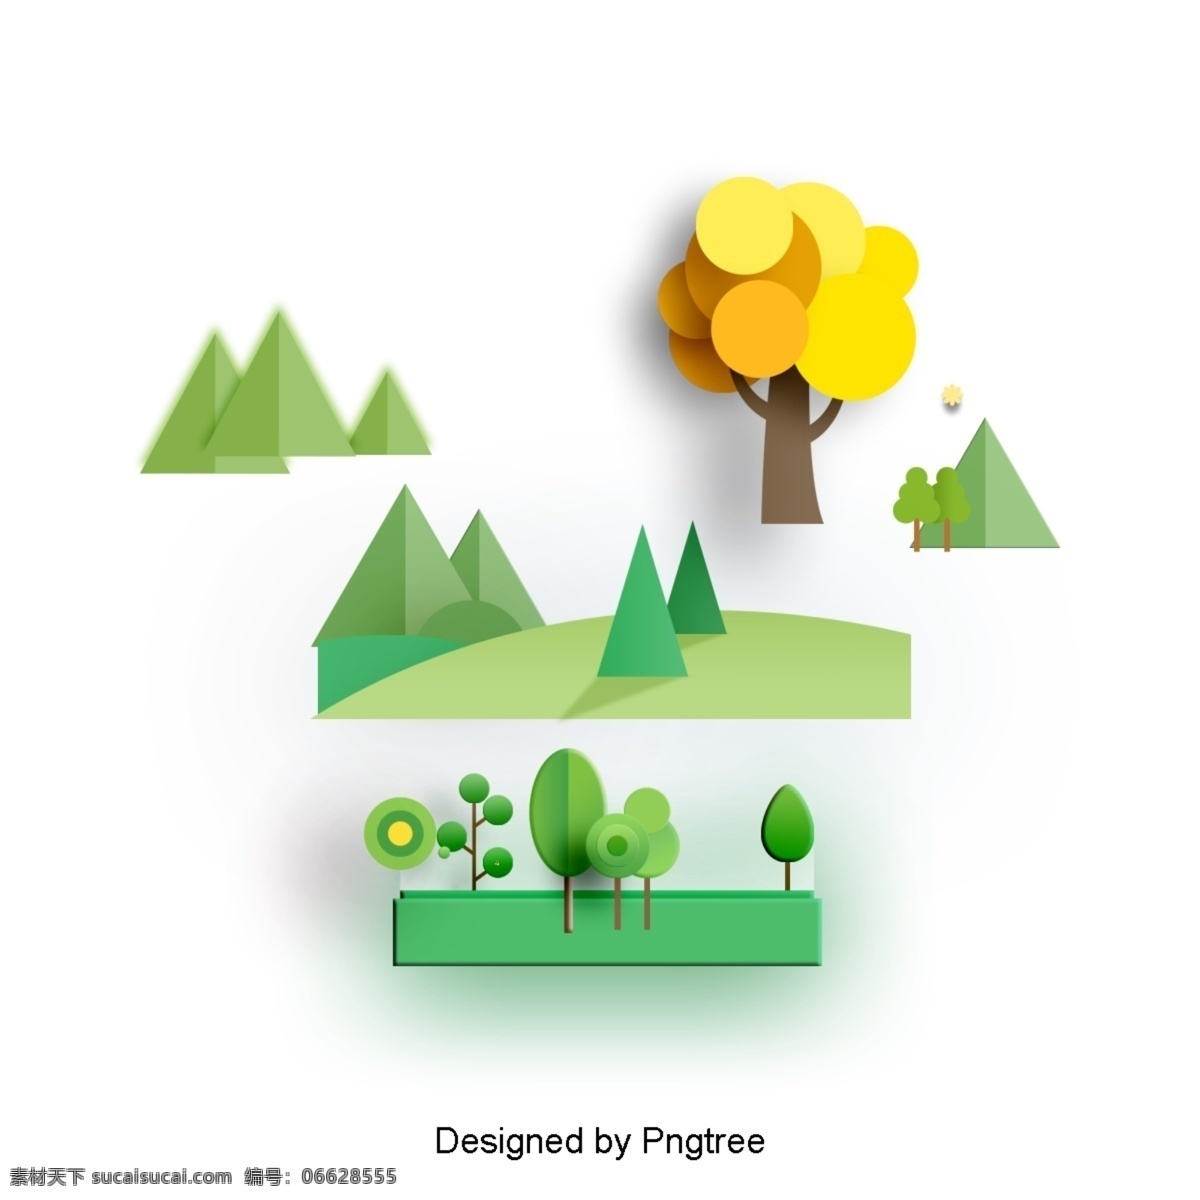 简单 自然景观 元素 时尚 风格 自然 绿色植物 景观 创意 图形 绘画 树叶